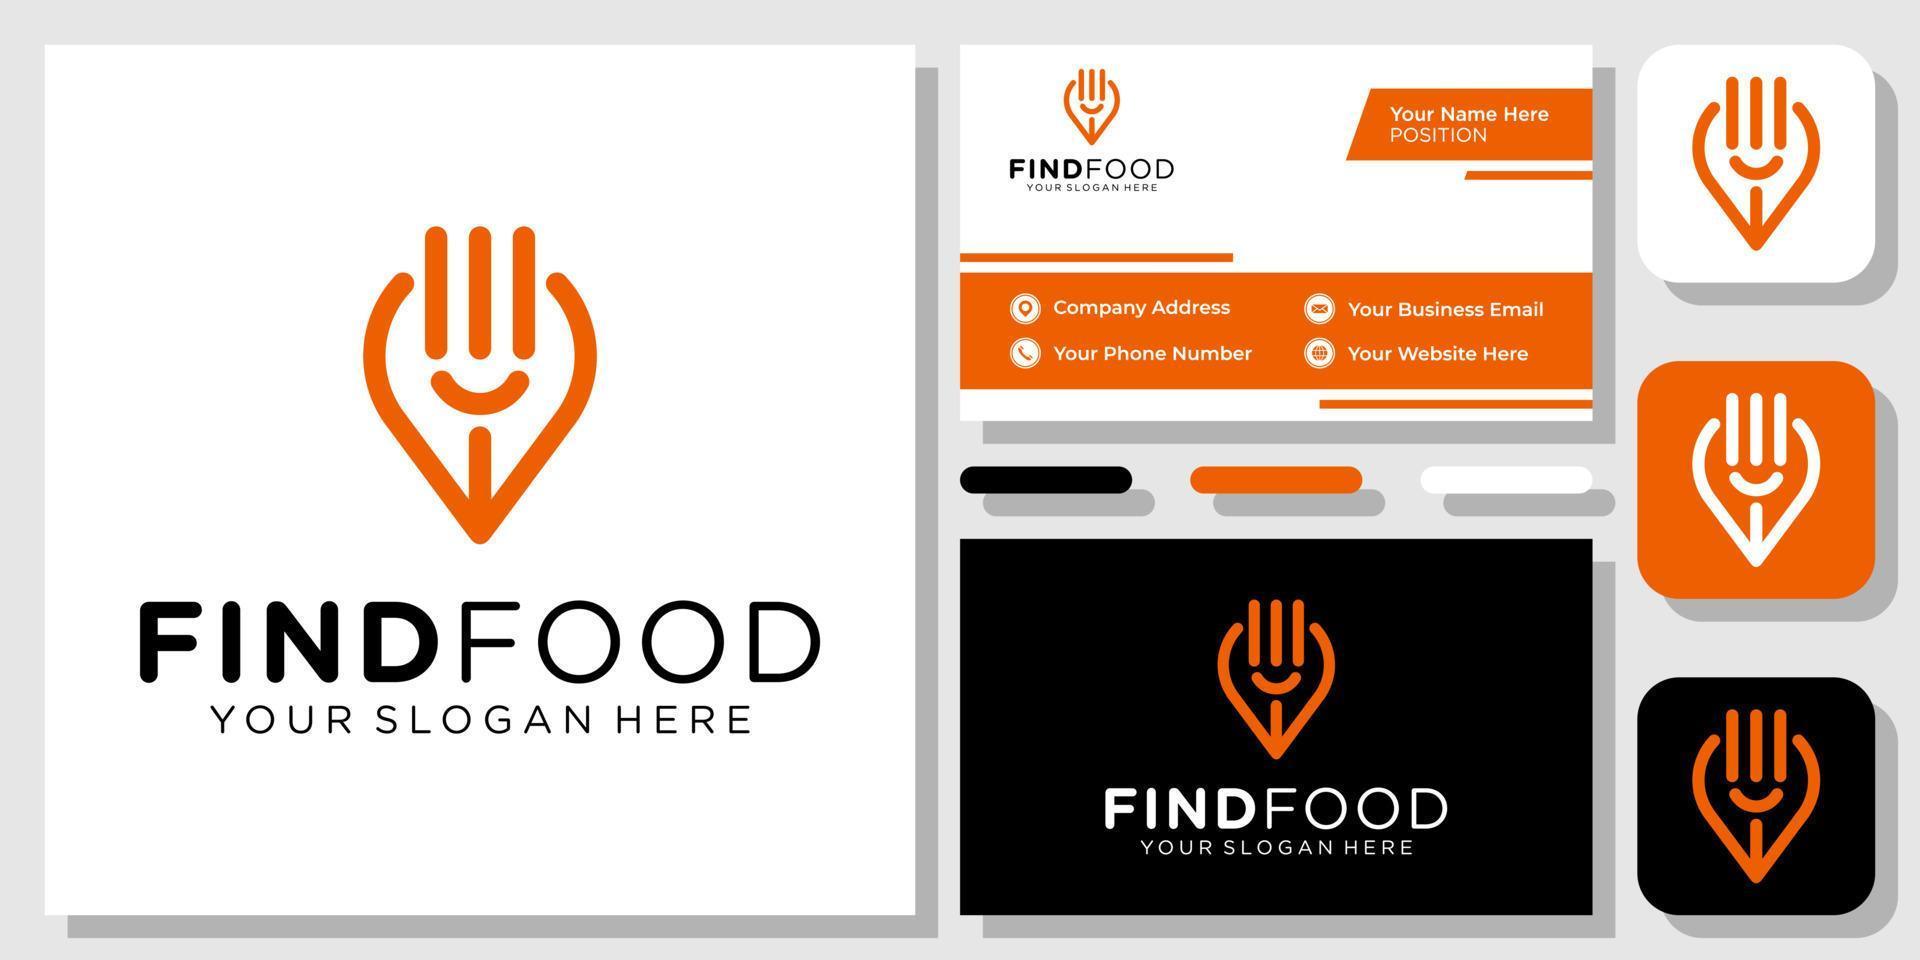 vork pin kaart eten locatie restaurant lepel plaats keuken logo ontwerp met sjabloon voor visitekaartjes vector